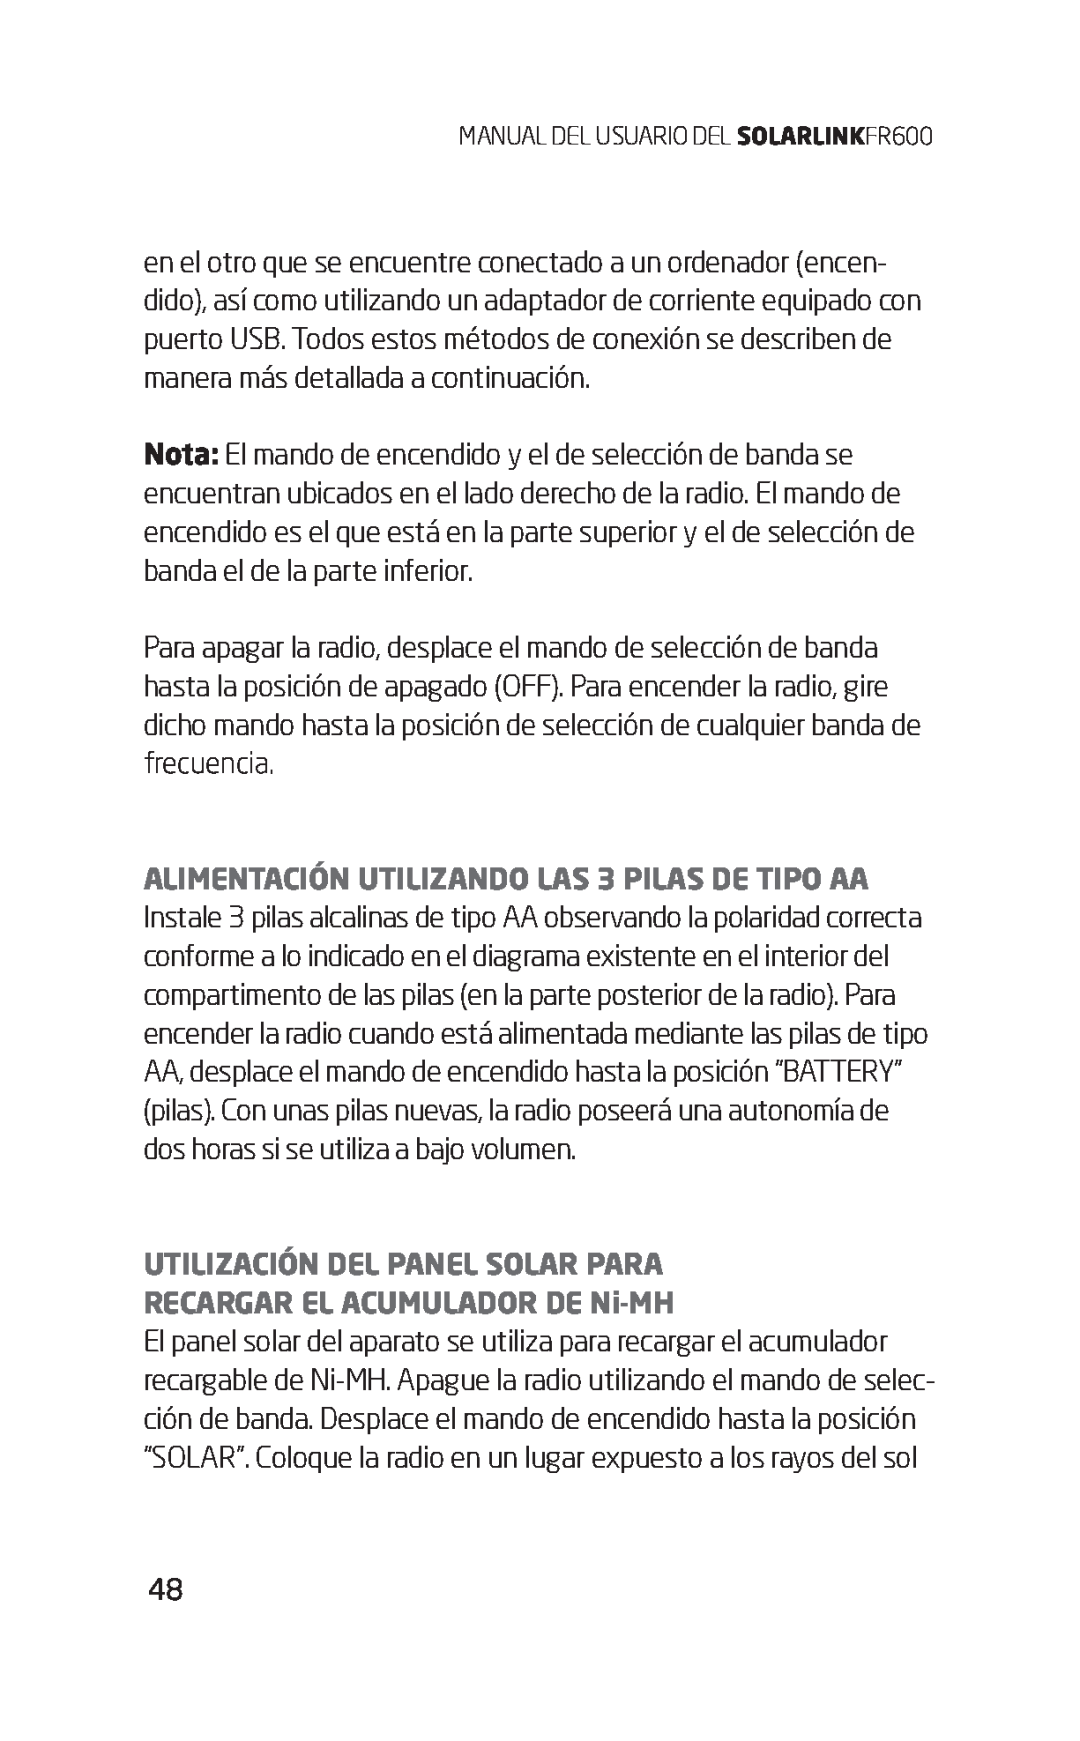 Eton FR600 owner manual UTILIZACIÓN DEL PANEL SOLAR PARA RECARGAR EL ACUMULADOR DE Ni-MH 